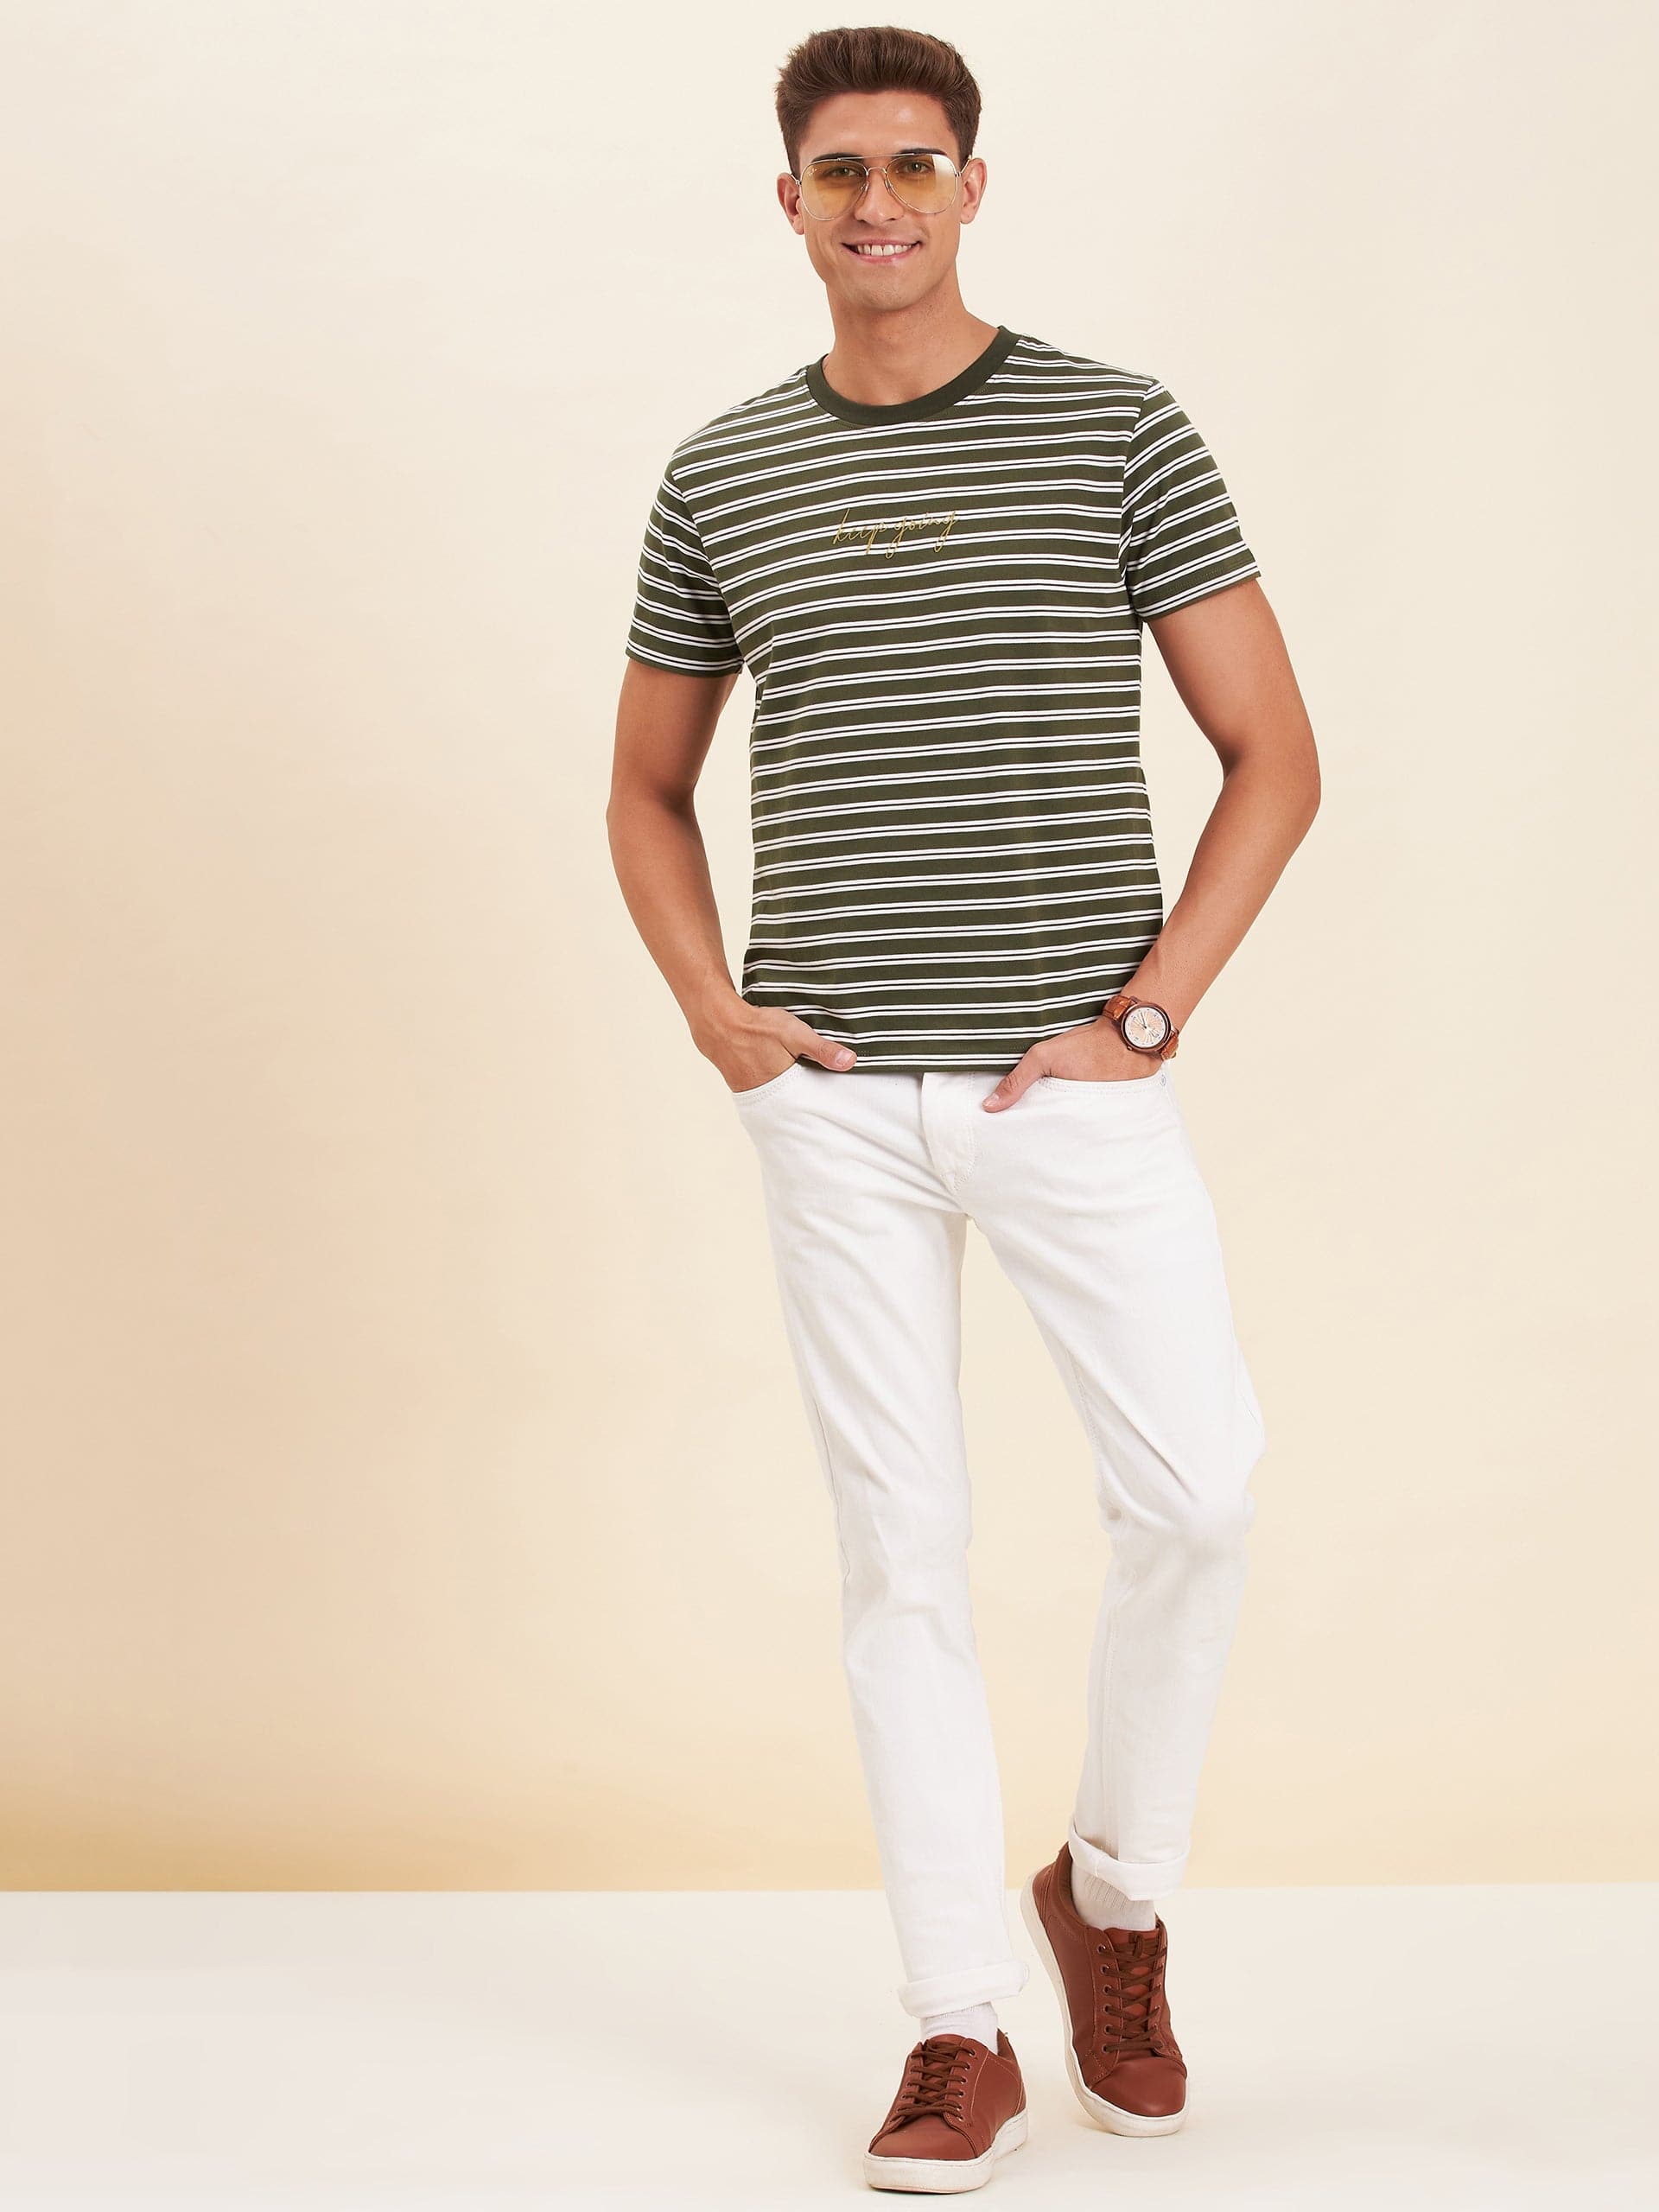 Men's Olive & White Stripes Embroidered Cotton T-Shirt - LYUSH-MASCLN